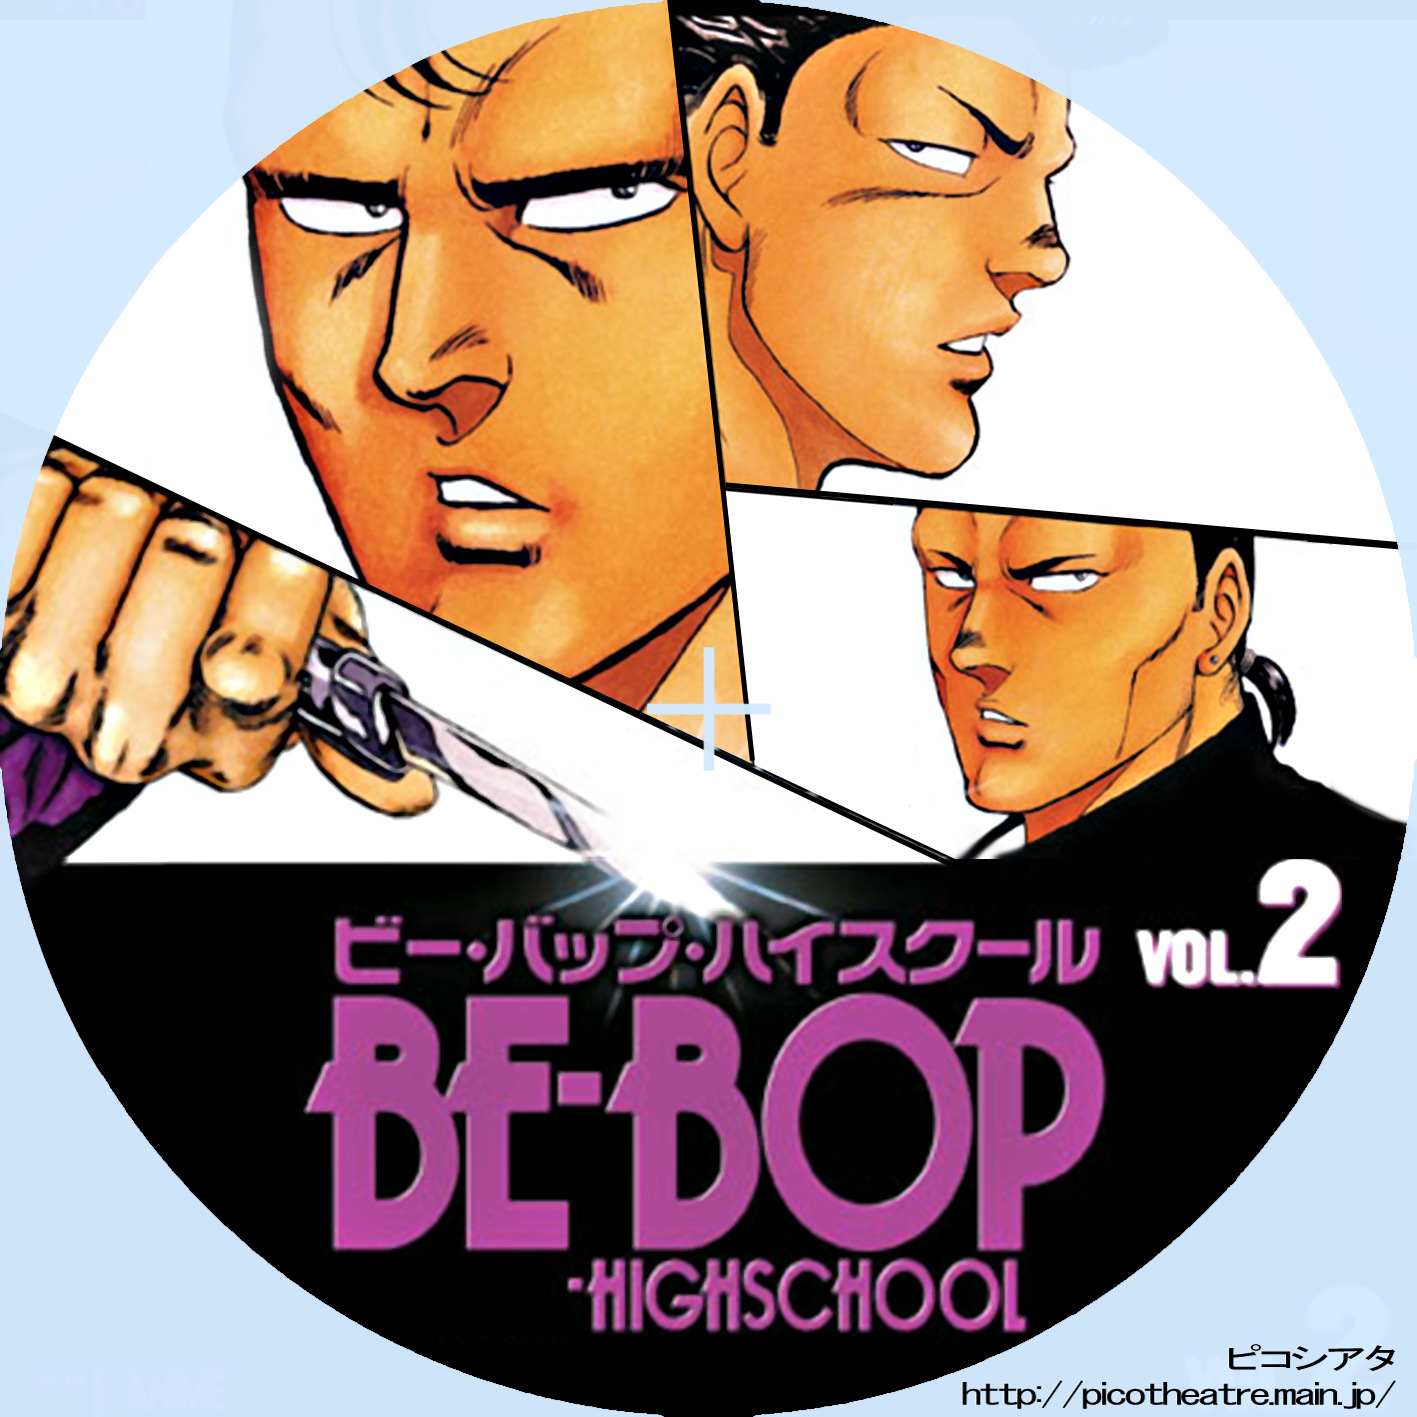 BE-BOP-HIGHSCHOOL ビー・バップ・ハイスクール02 | DVDラベルギャラリー